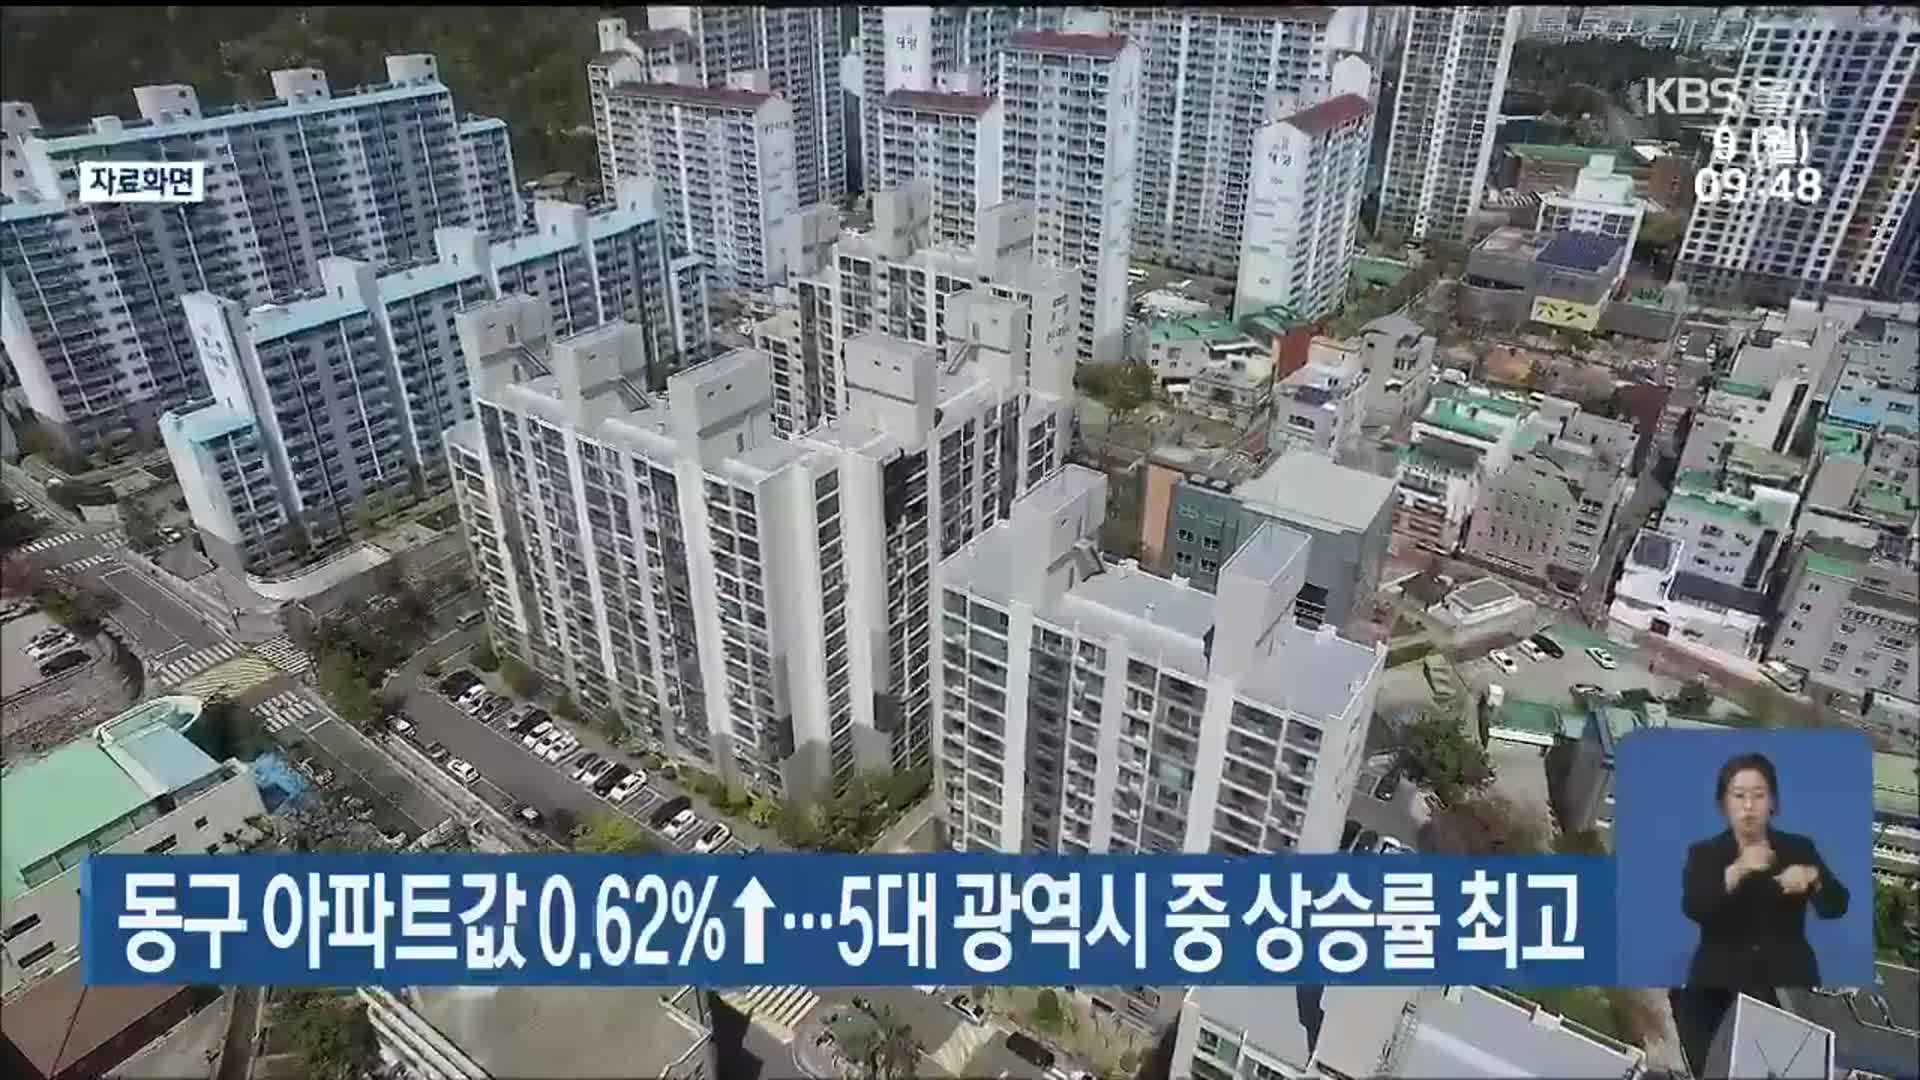 울산 동구 아파트값 0.62%↑…5대 광역시 중 상승률 최고